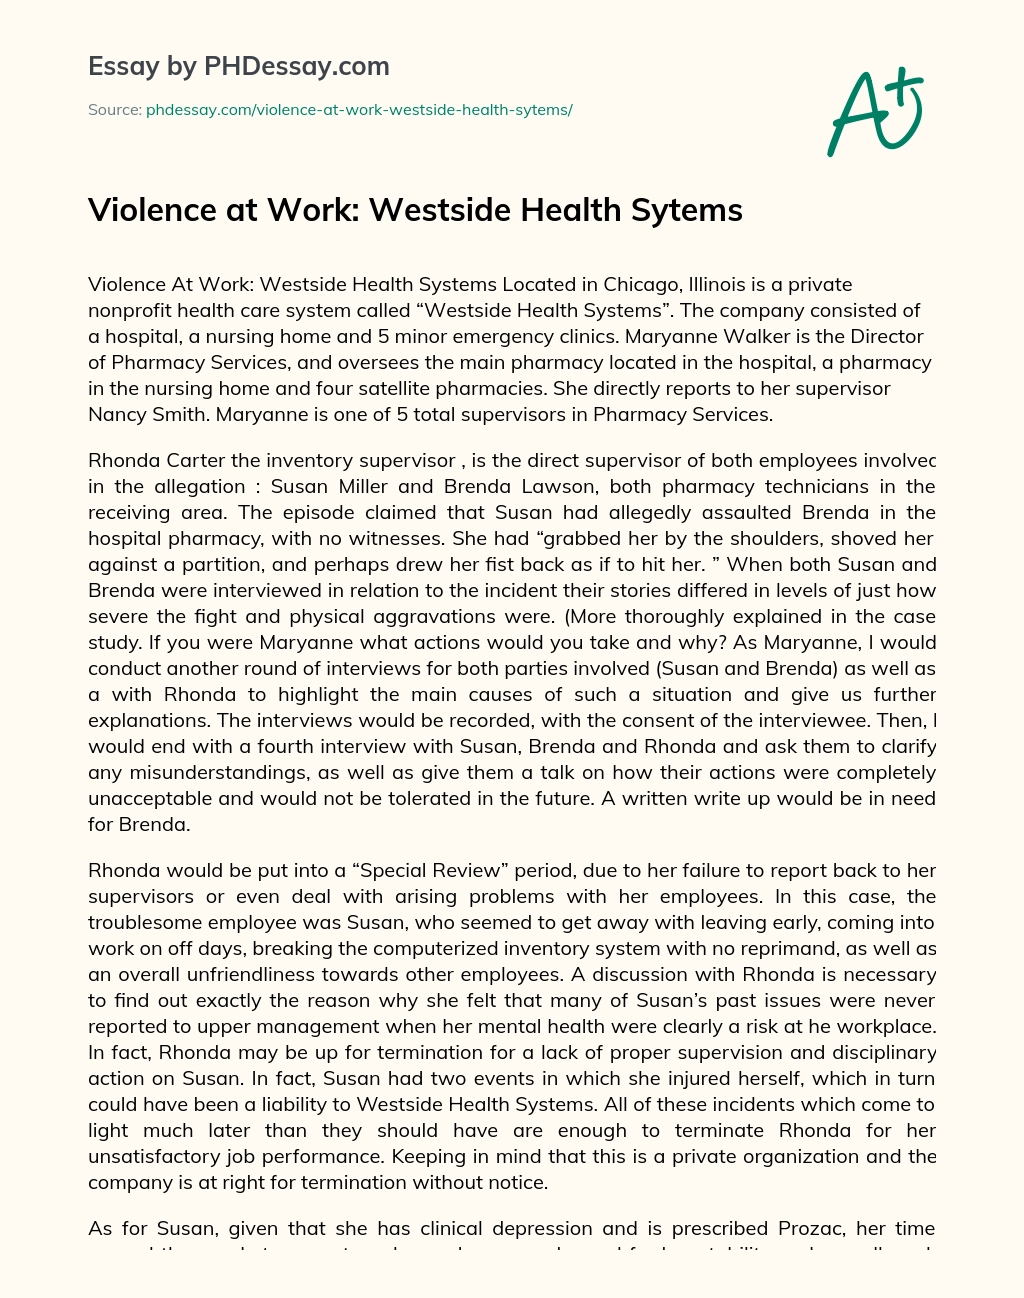 Violence at Work: Westside Health Sytems essay